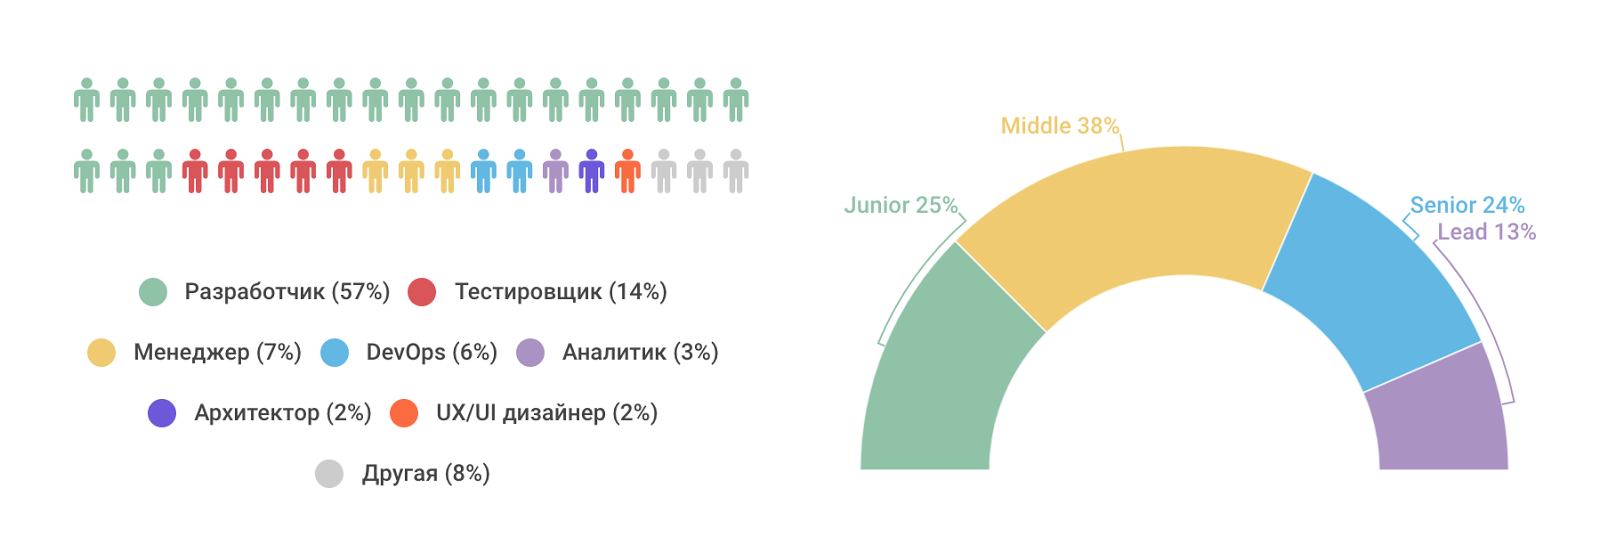 Рейтинг ИТ-работодателей Санкт-Петербурга и Москвы: результаты опроса разработчиков - 2